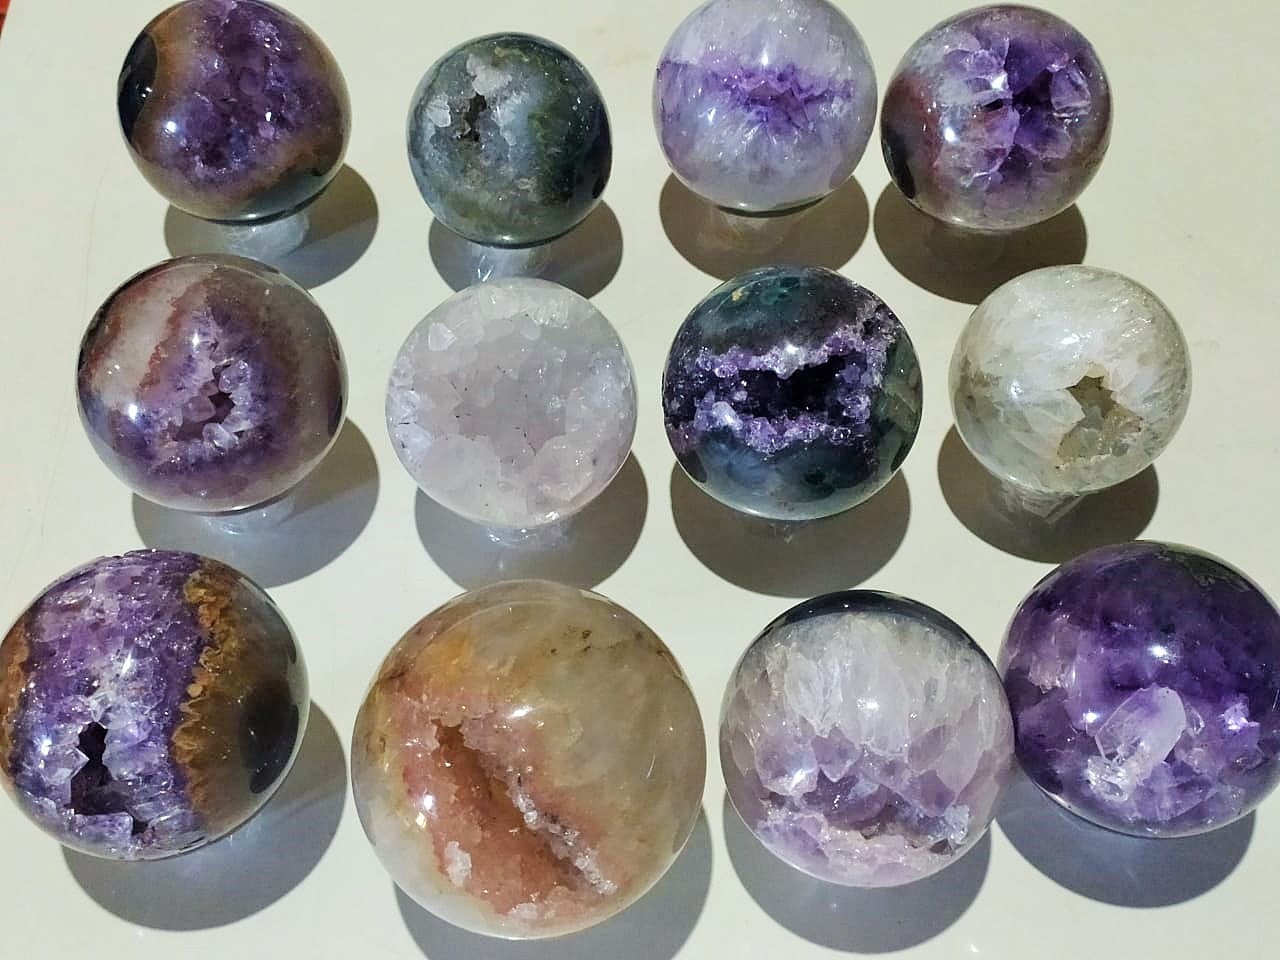 Stones from Uruguay - Amethyst Crystal Sphere - Amethyst Druzy Geode Sphere